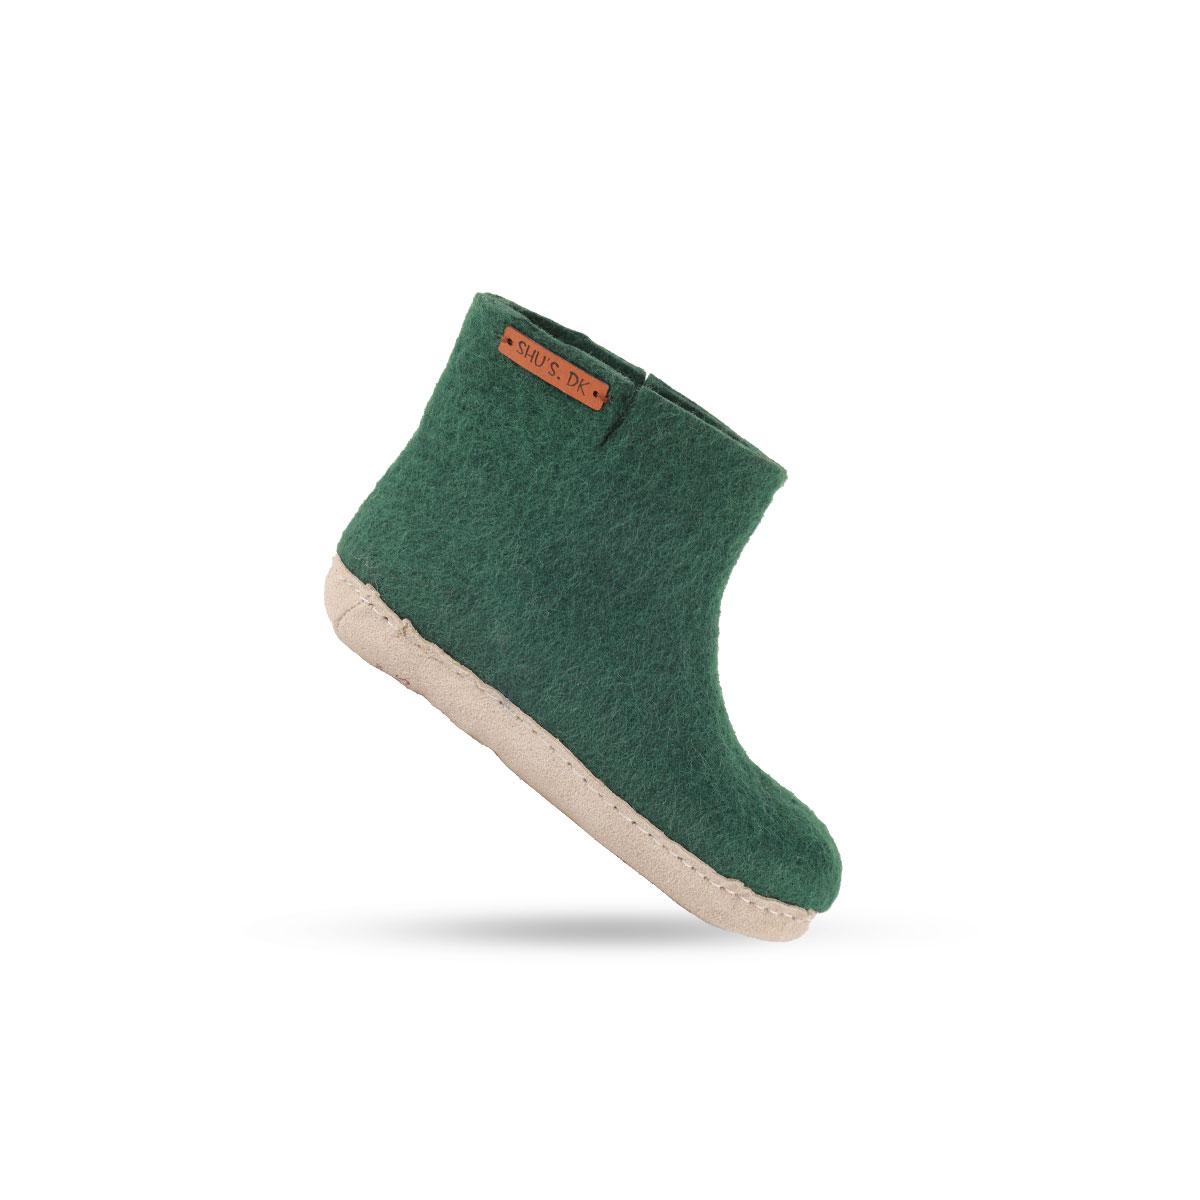 Billede af Uldstøvle til Børn (100% ren uld) - Model Grøn m/sål i skind - Dansk Design fra SHUS